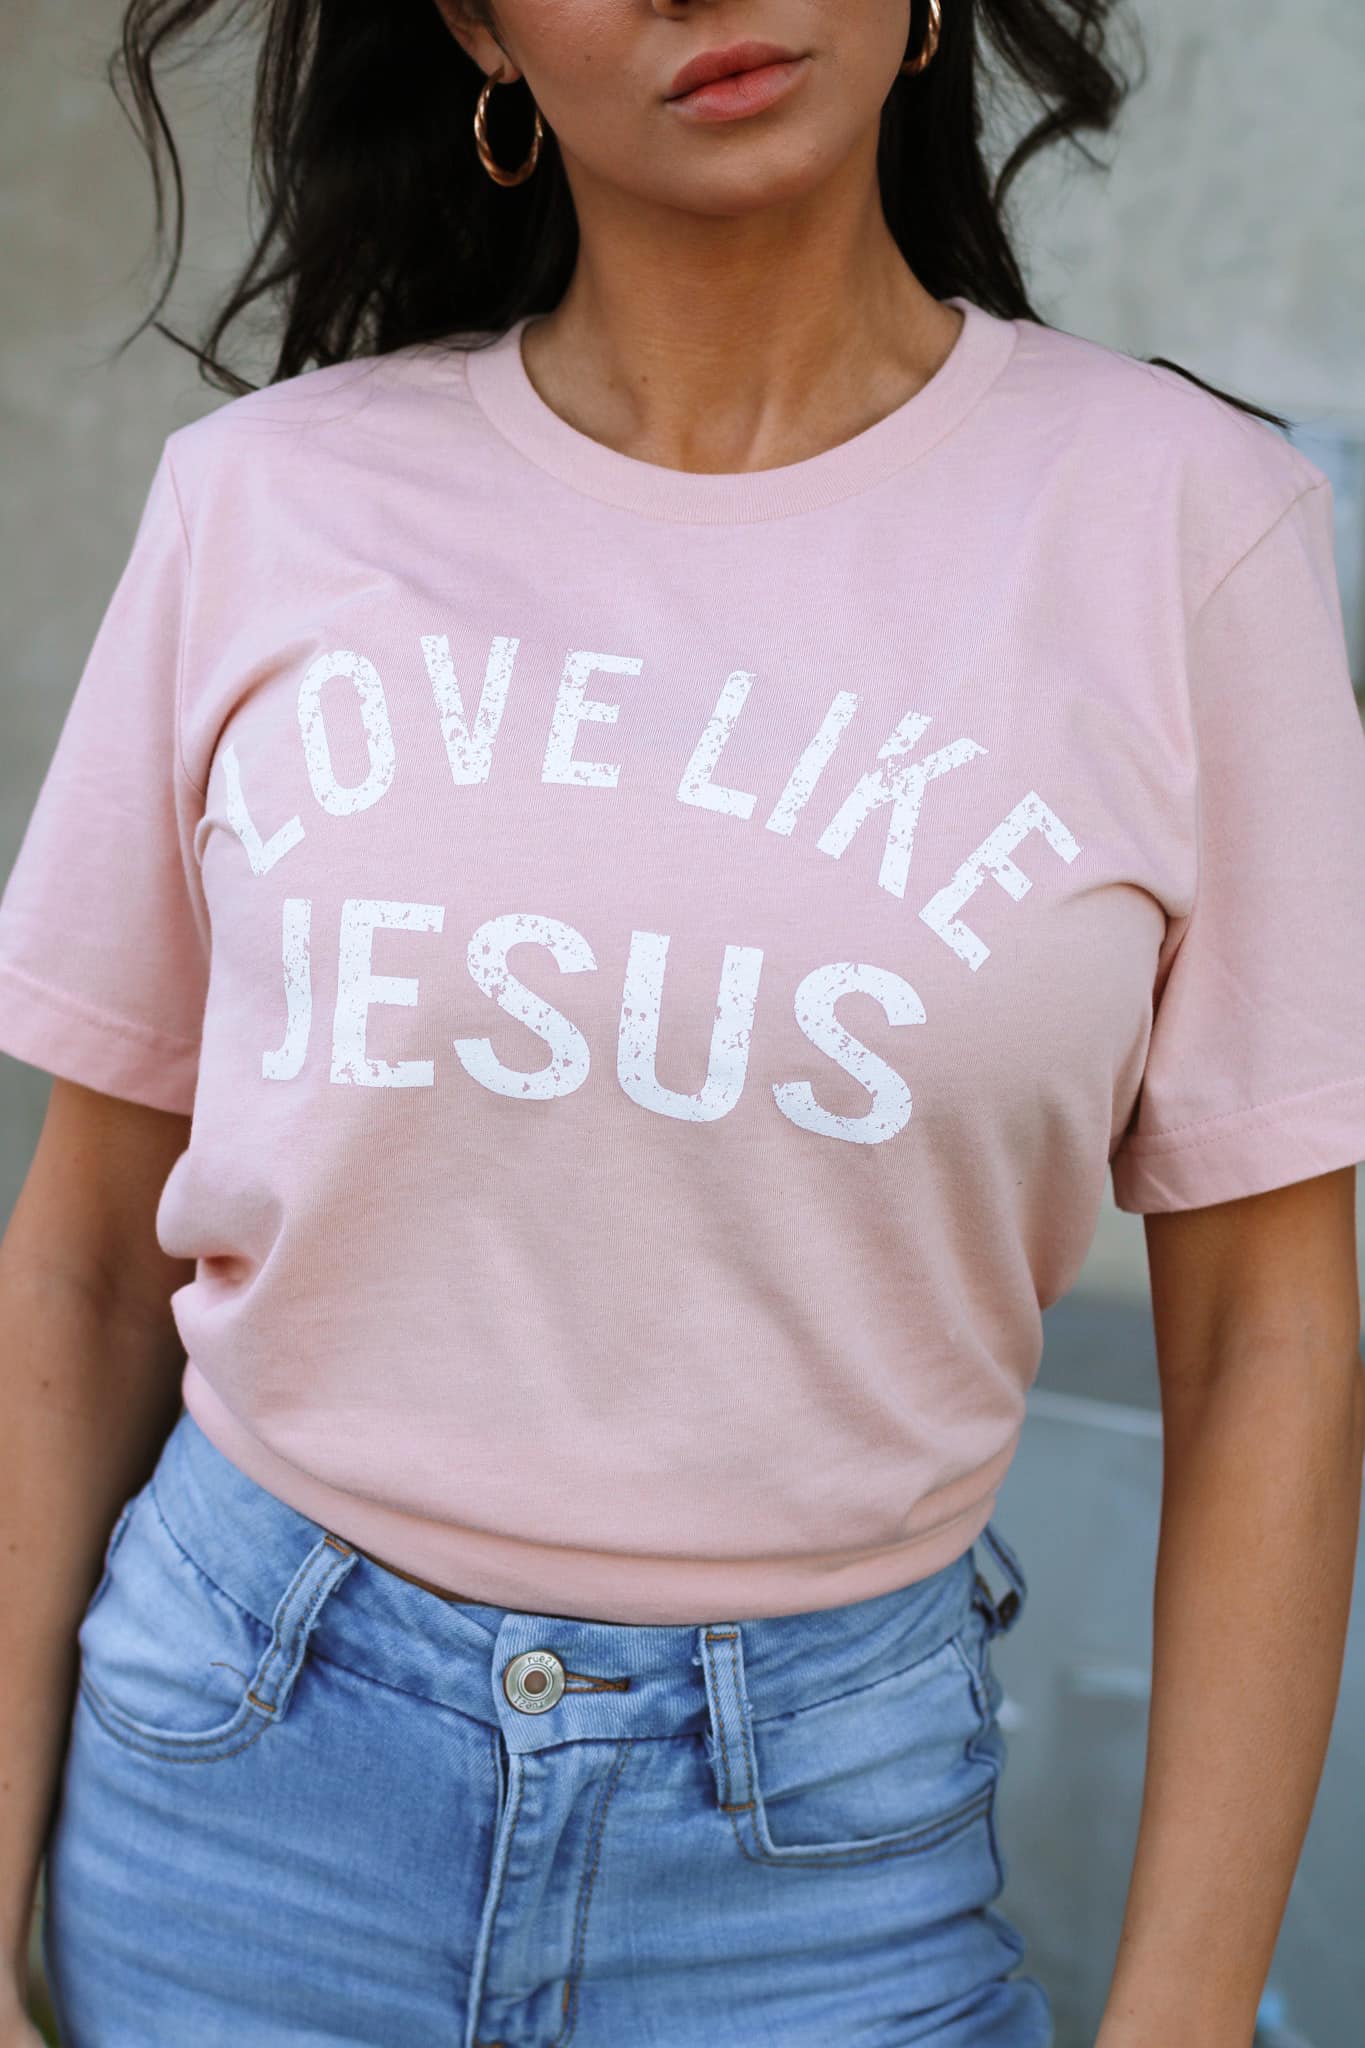 Love Like Jesus - Southern Divas Boutique